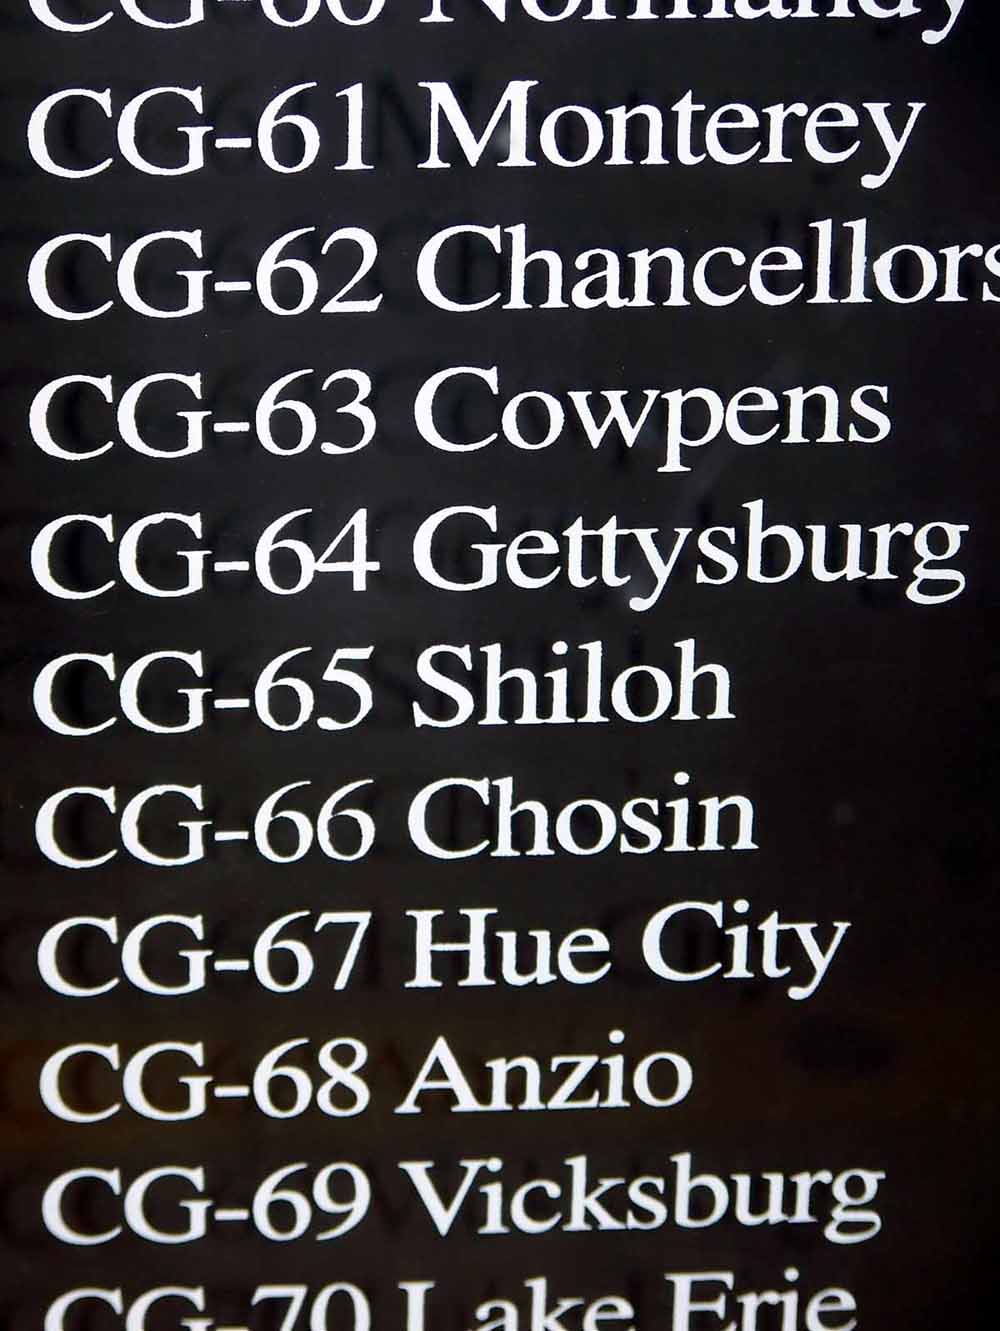 clg4-45